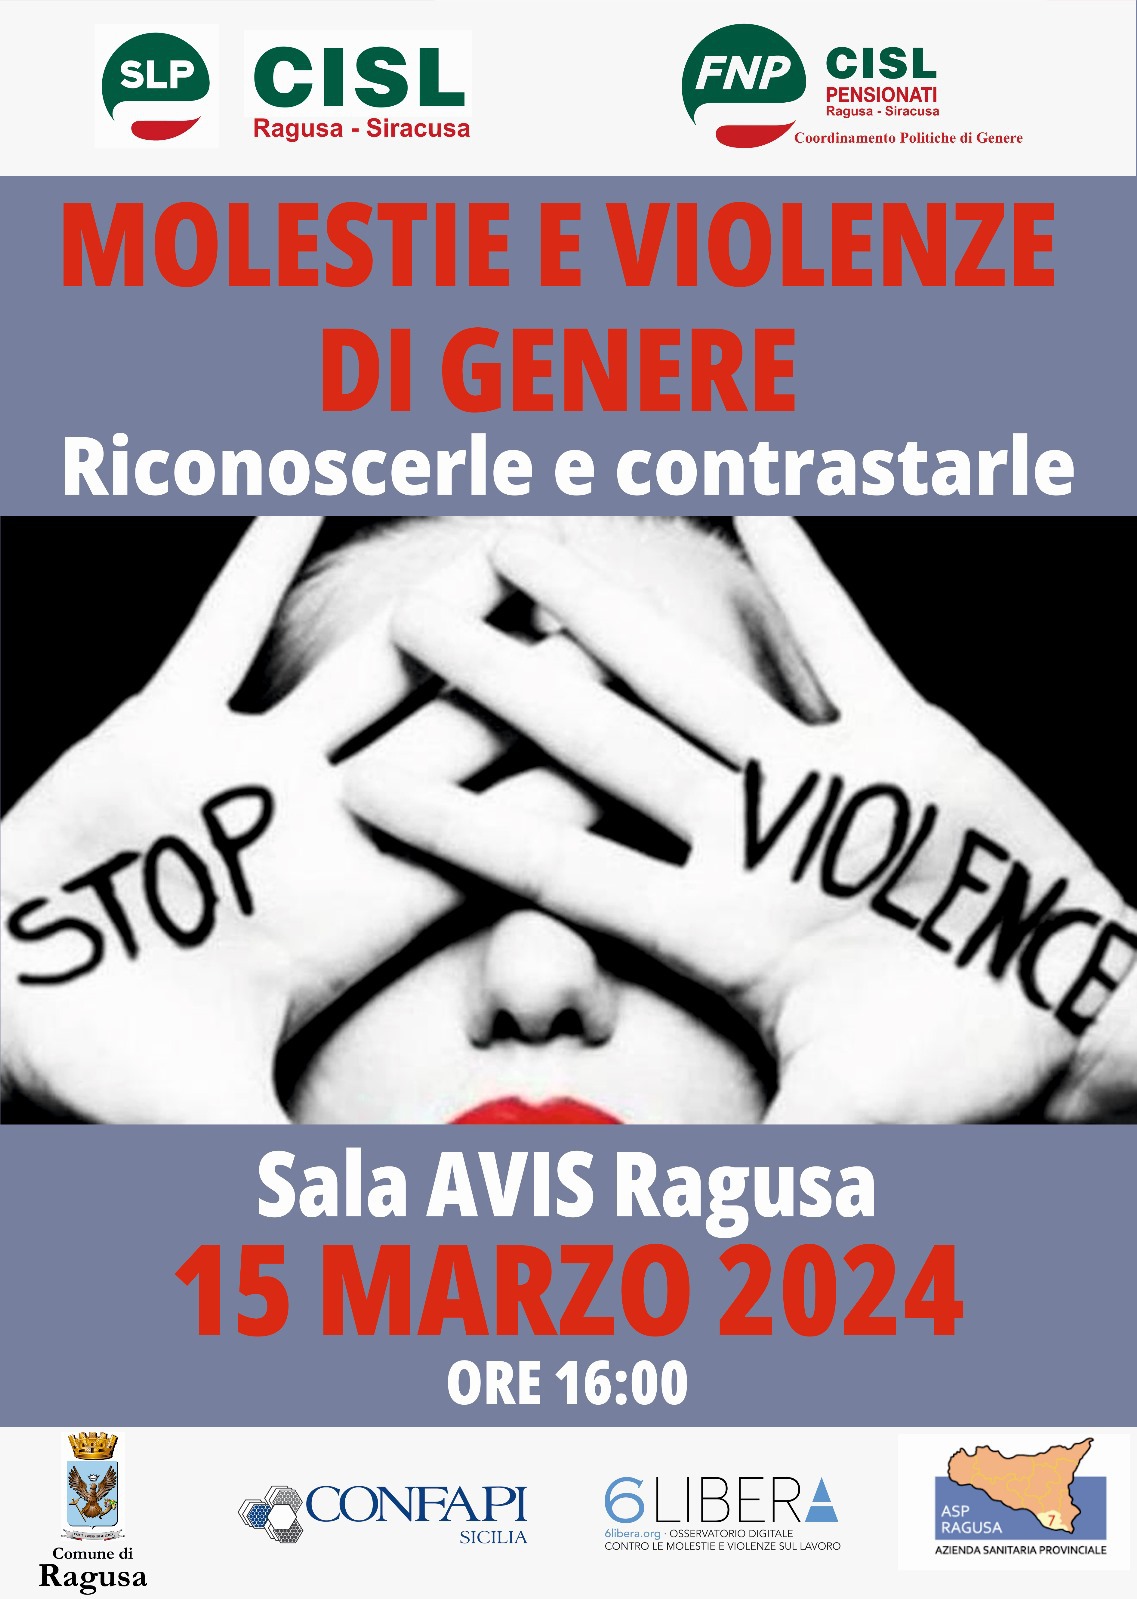 Scopri di più sull'articolo “Molestie e violenze di genere: riconoscerle e contrastarle” convegno in cui sarà presente Confapi Sicilia